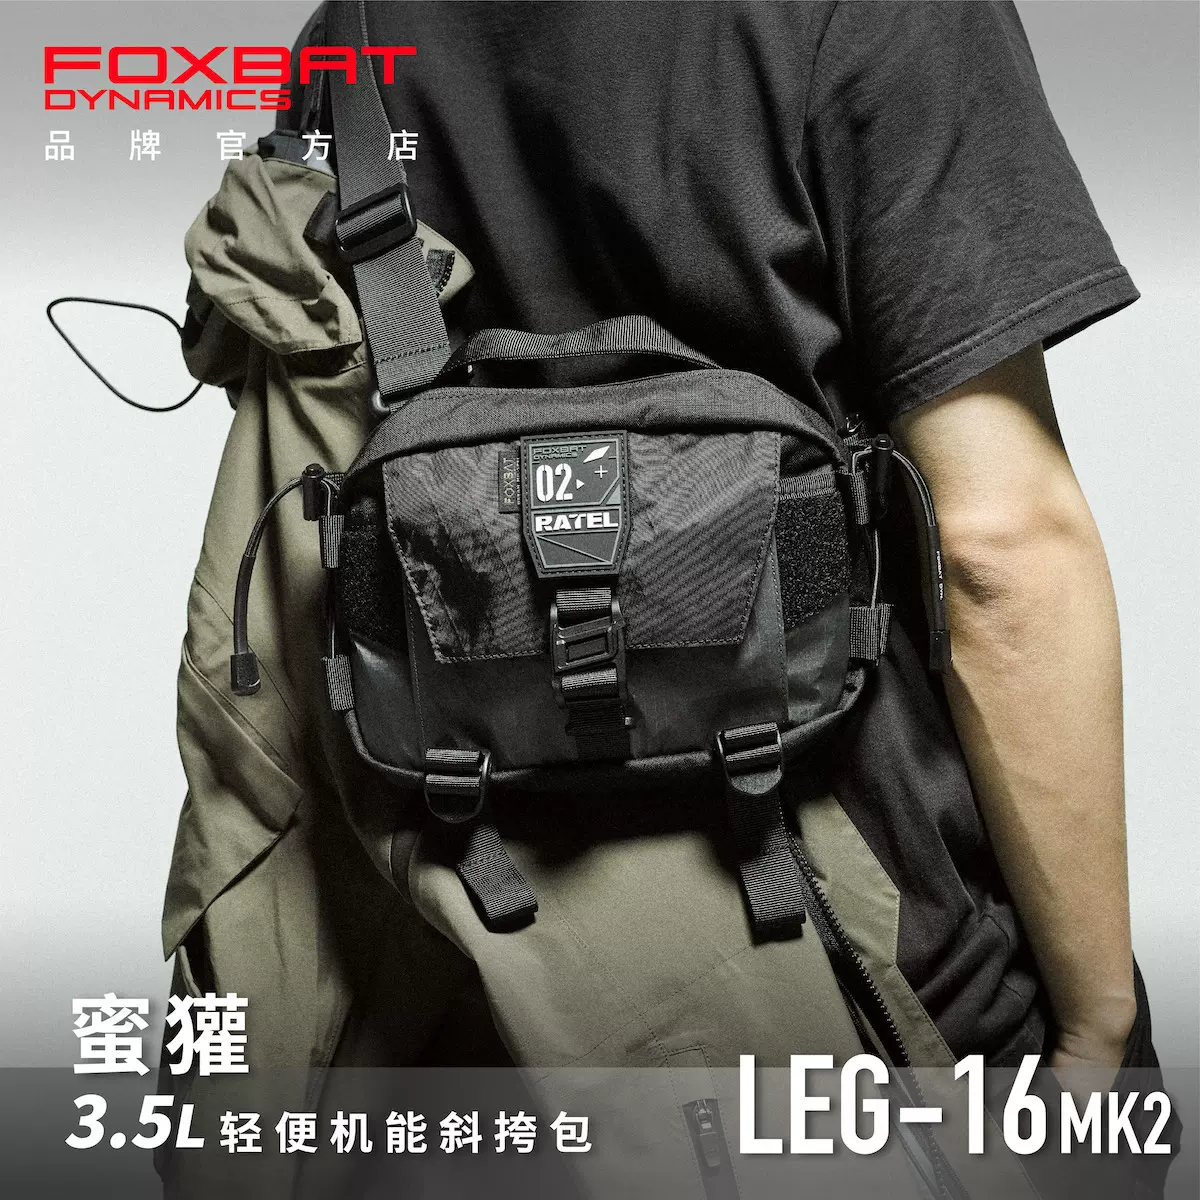 FOXBAT LEG-05 MK3 X-PAC-